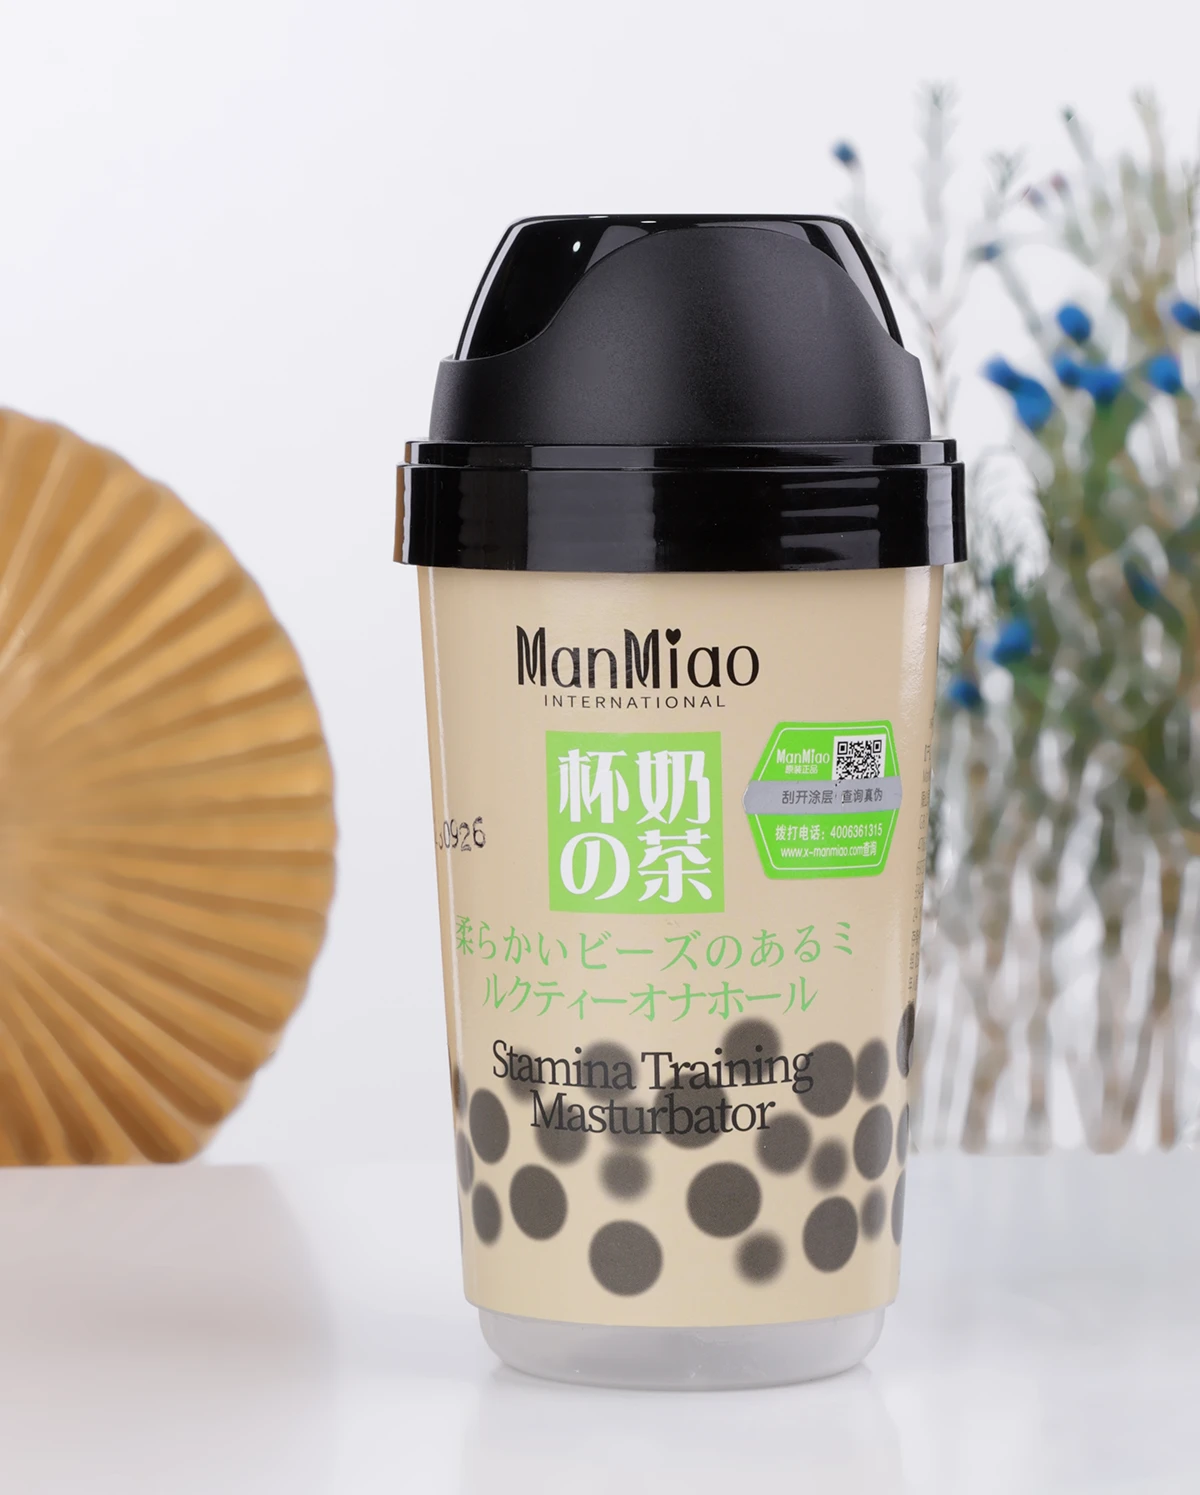 Kho sỉ Cốc thủ dâm Manmiao Stamina Training thiết kế nguỵ trang ly trà sữa có hạt trân châu mới nhất